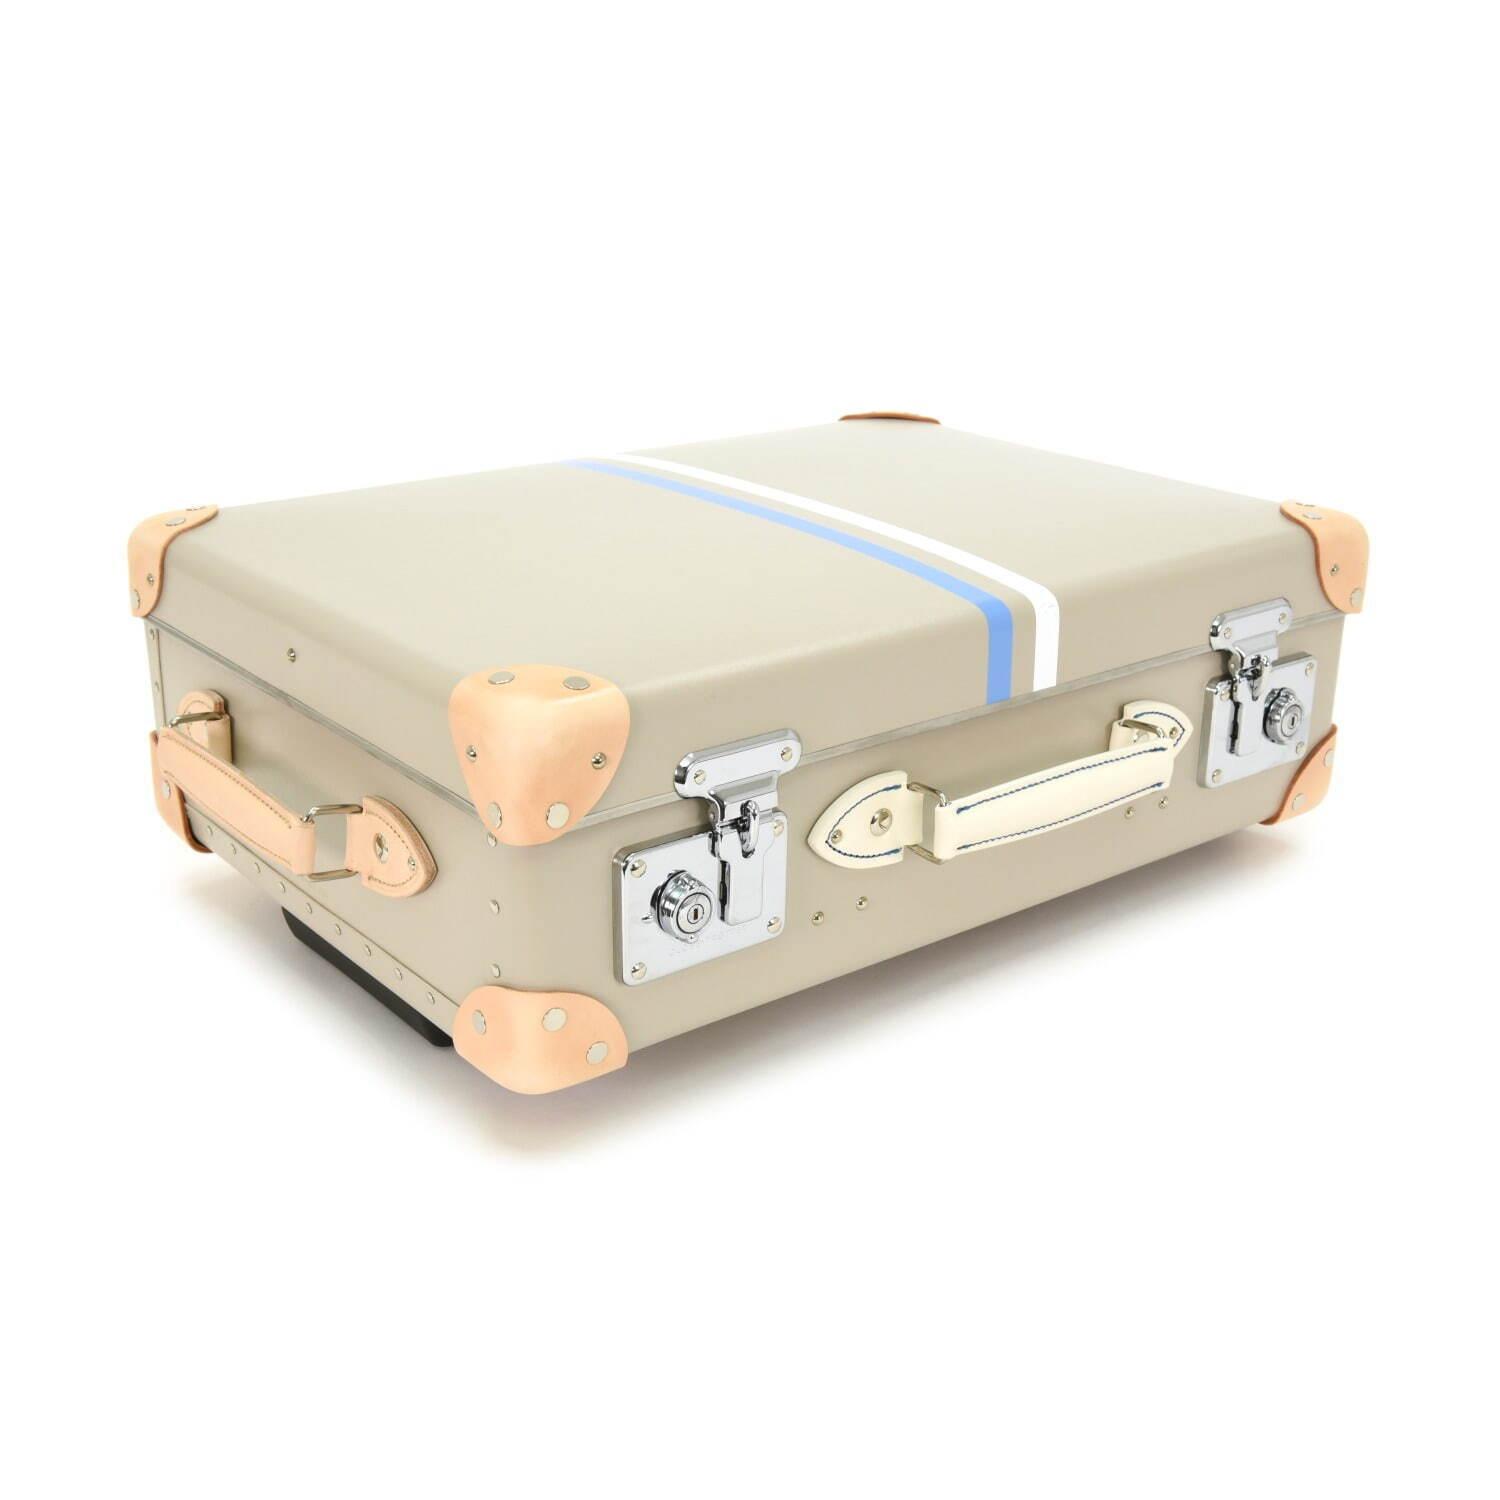 グローブ・トロッター“英国の家族旅行”着想のストライプ柄スーツケース、白い砂浜×青い海カラー コピー